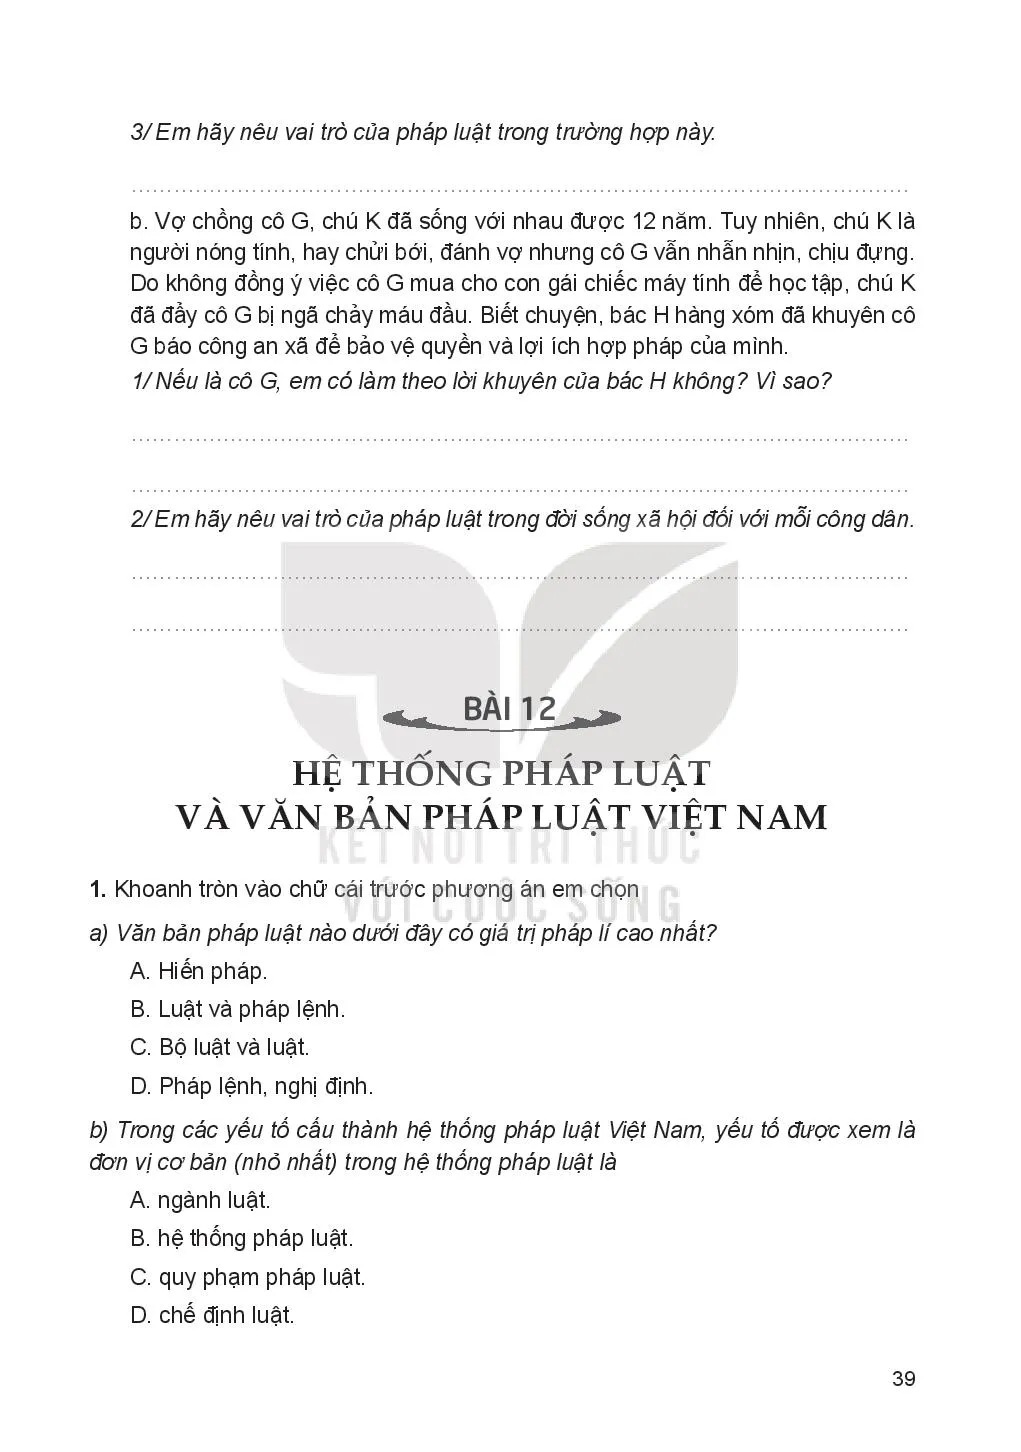 Bài 12: Hệ thống pháp luật và văn bản pháp luật Việt Nam